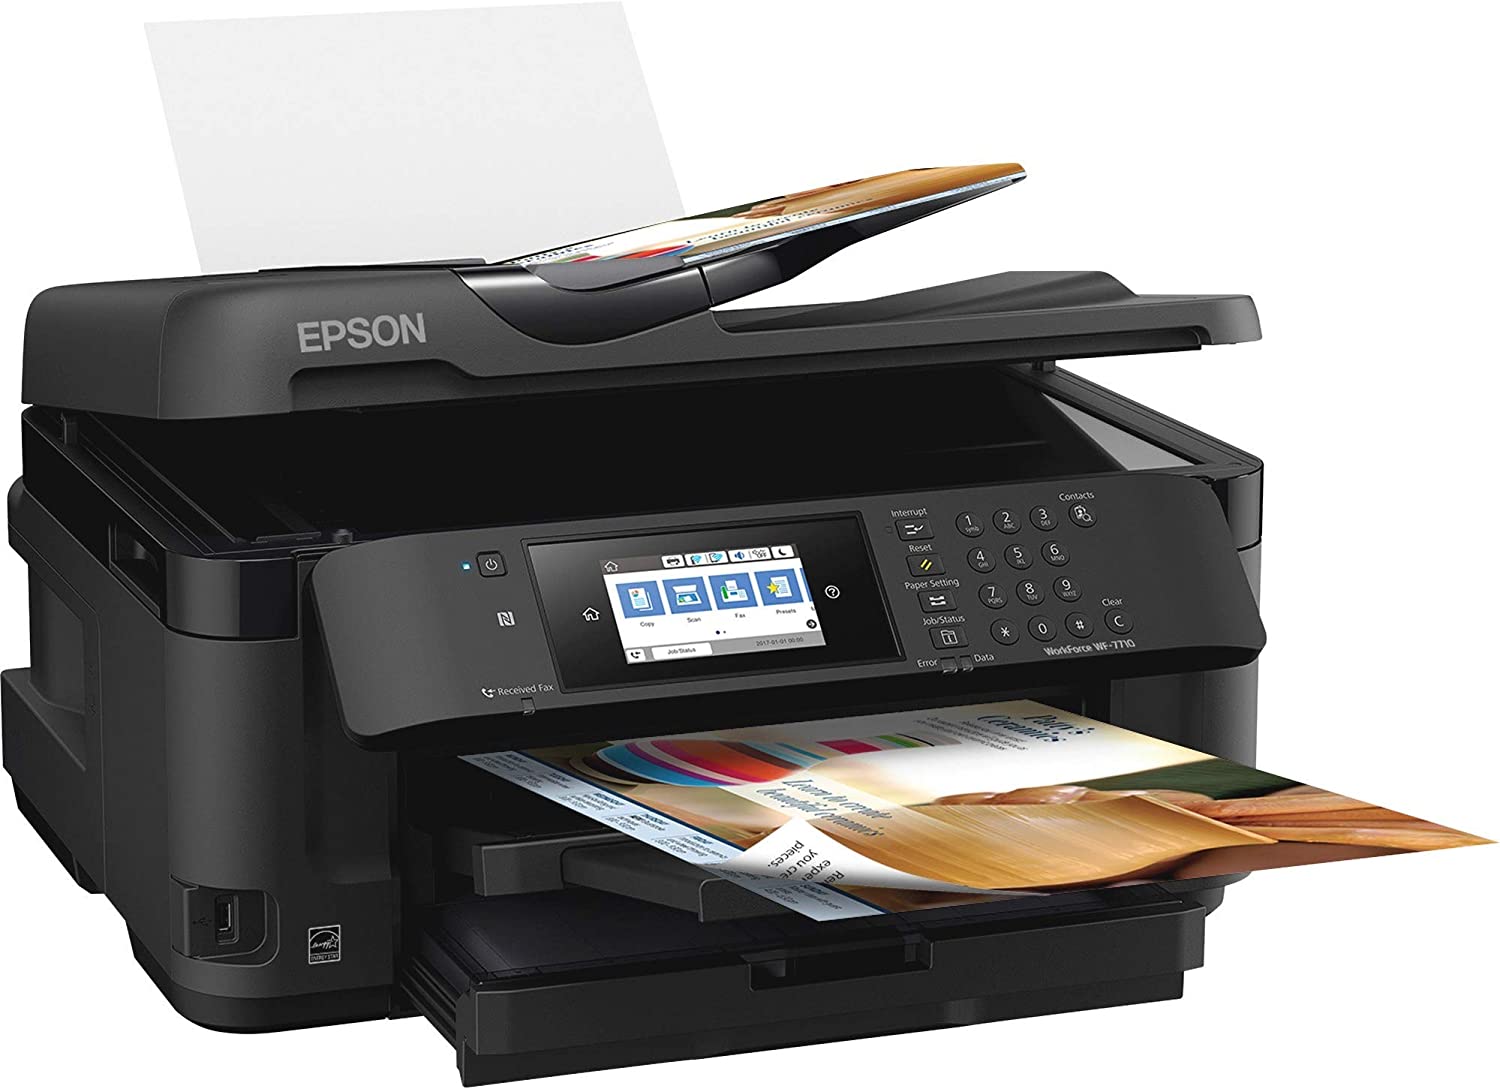 Epson WorkForce WF-7710 Inkjet Printer - Best Inkjet Printer for Cricut